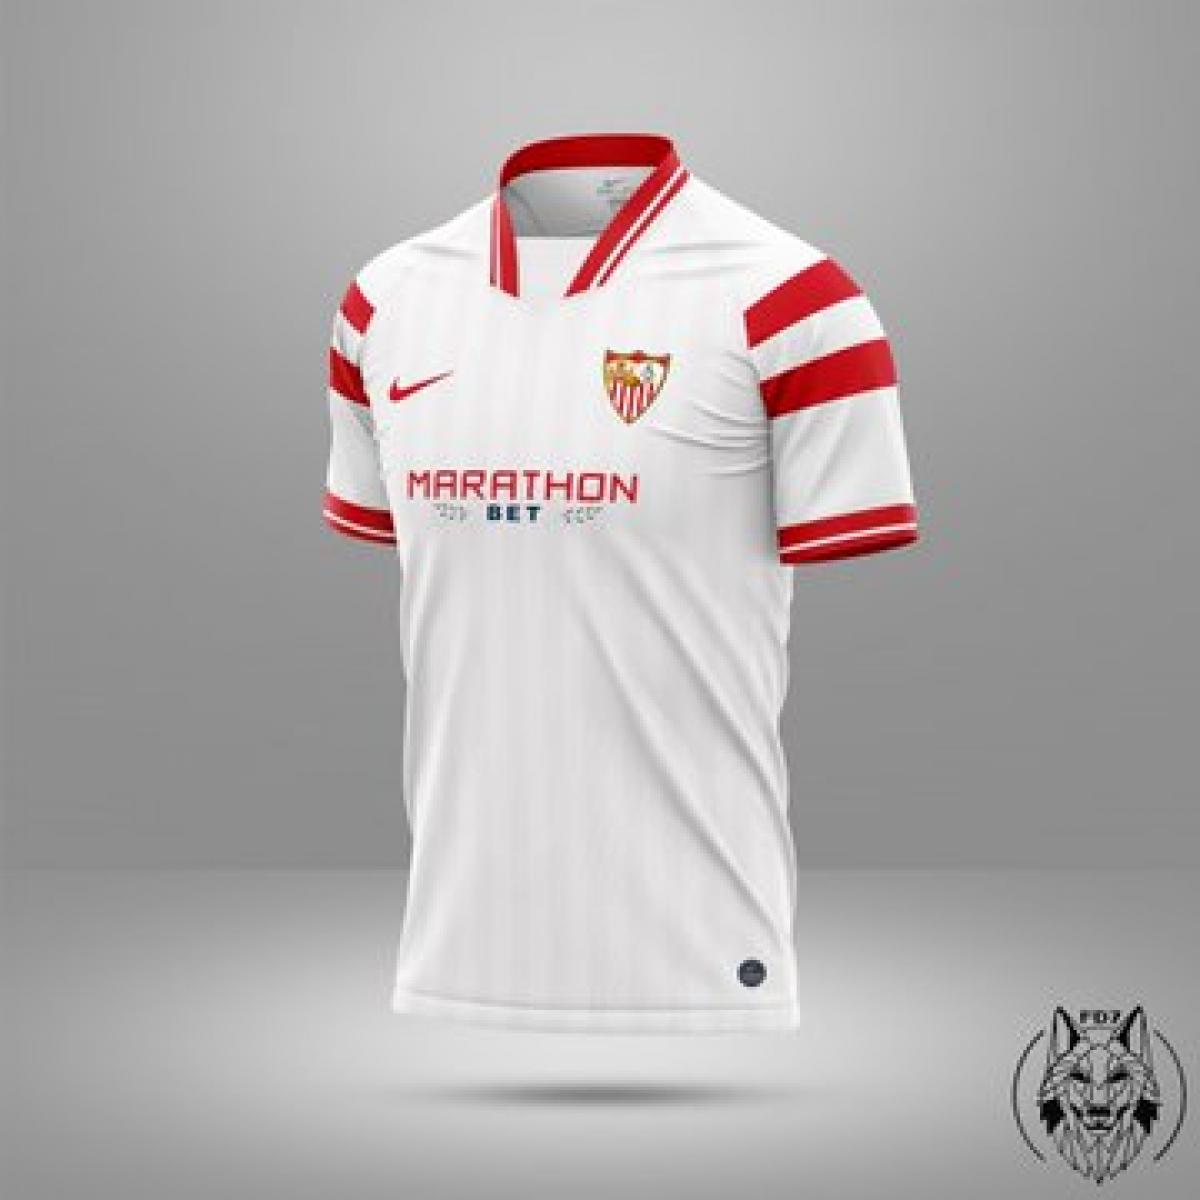 Camiseta del Sevilla FC 2020/21 Nike, nuevos diseños en las redes